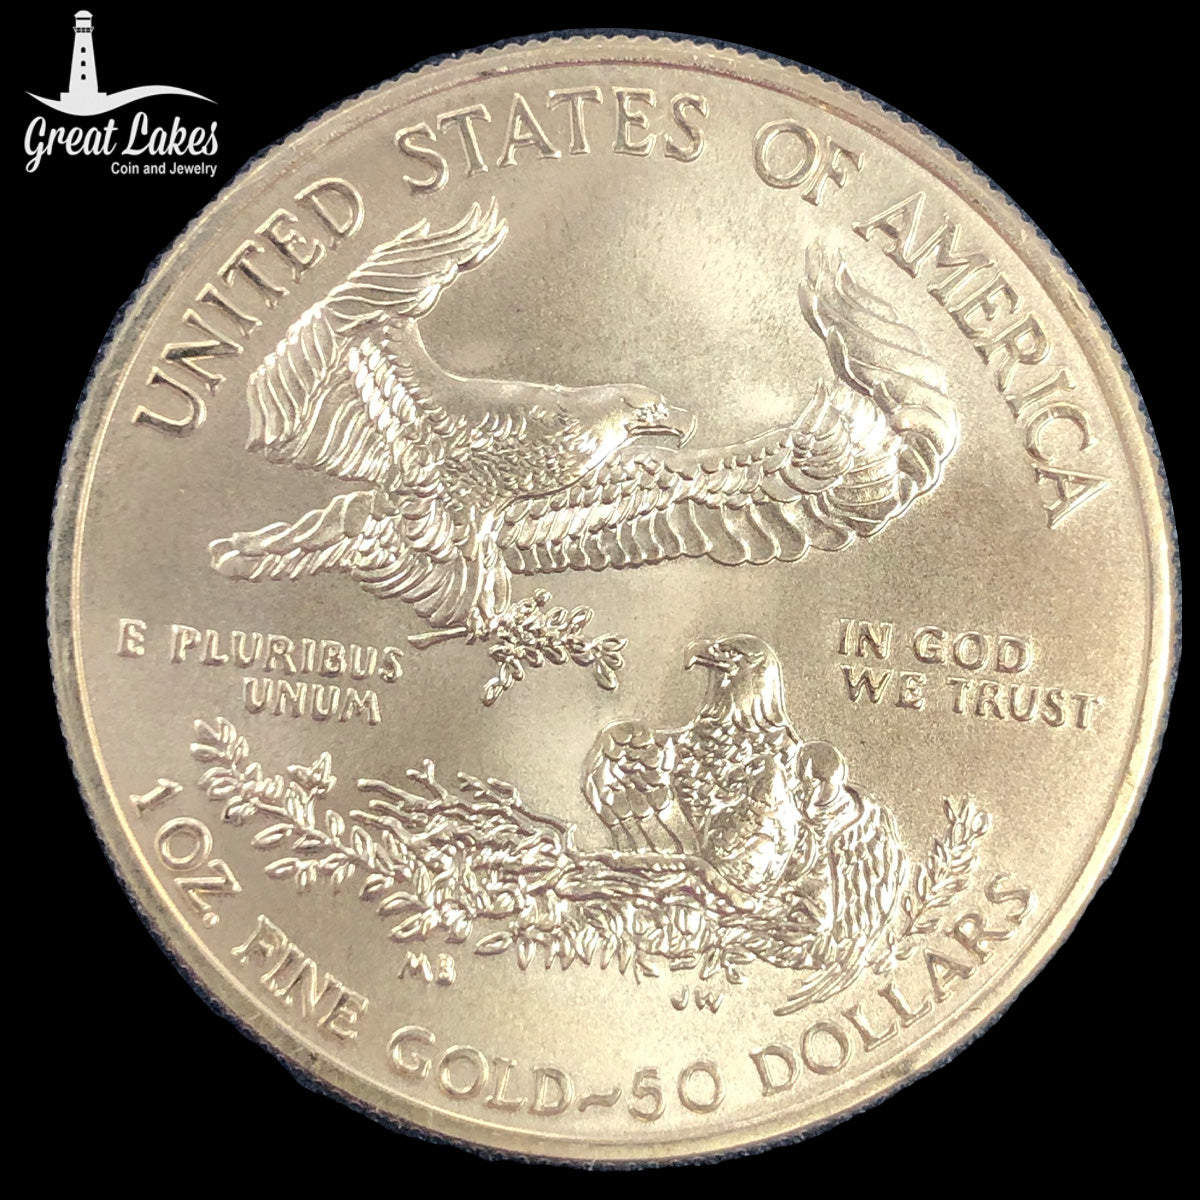 2009 1 oz American Gold Eagle (BU)